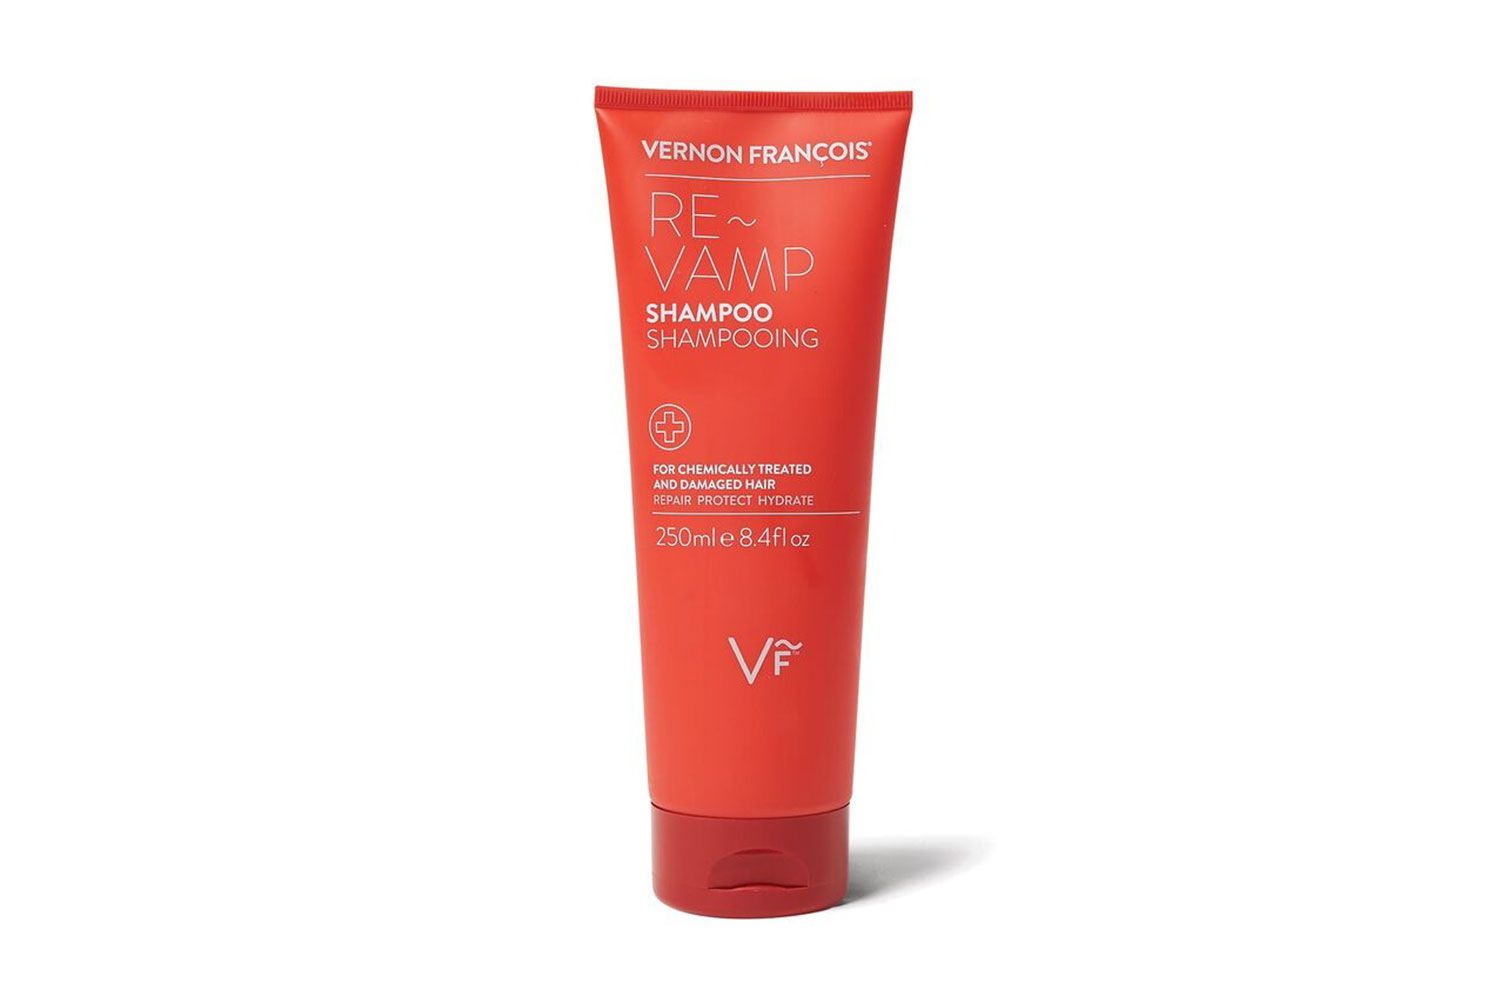 Vernon François re-vampm shampoo